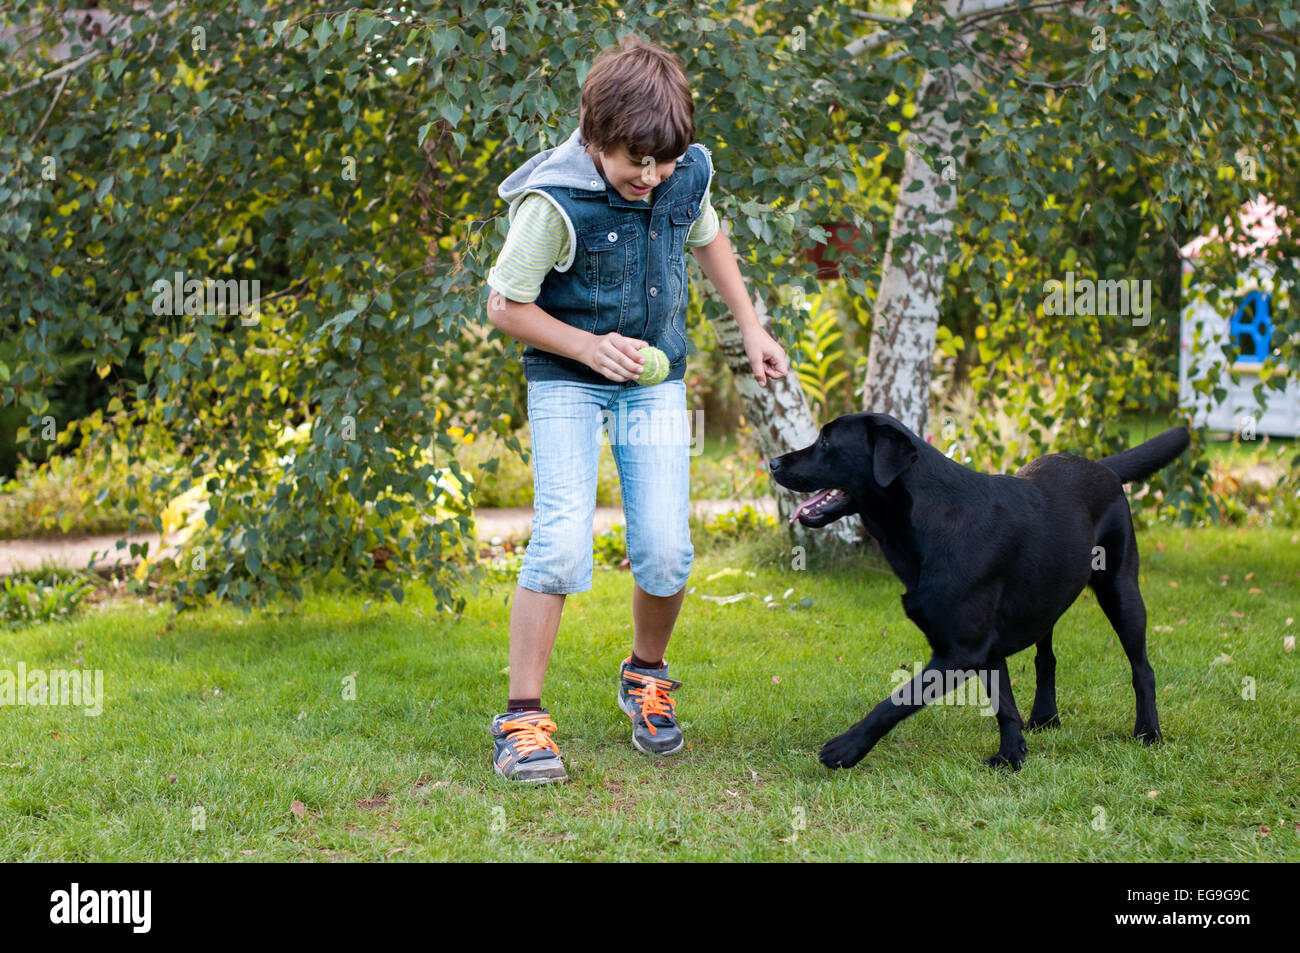 Junge (9-10) spielen mit Hund auf Wiese Stockfoto